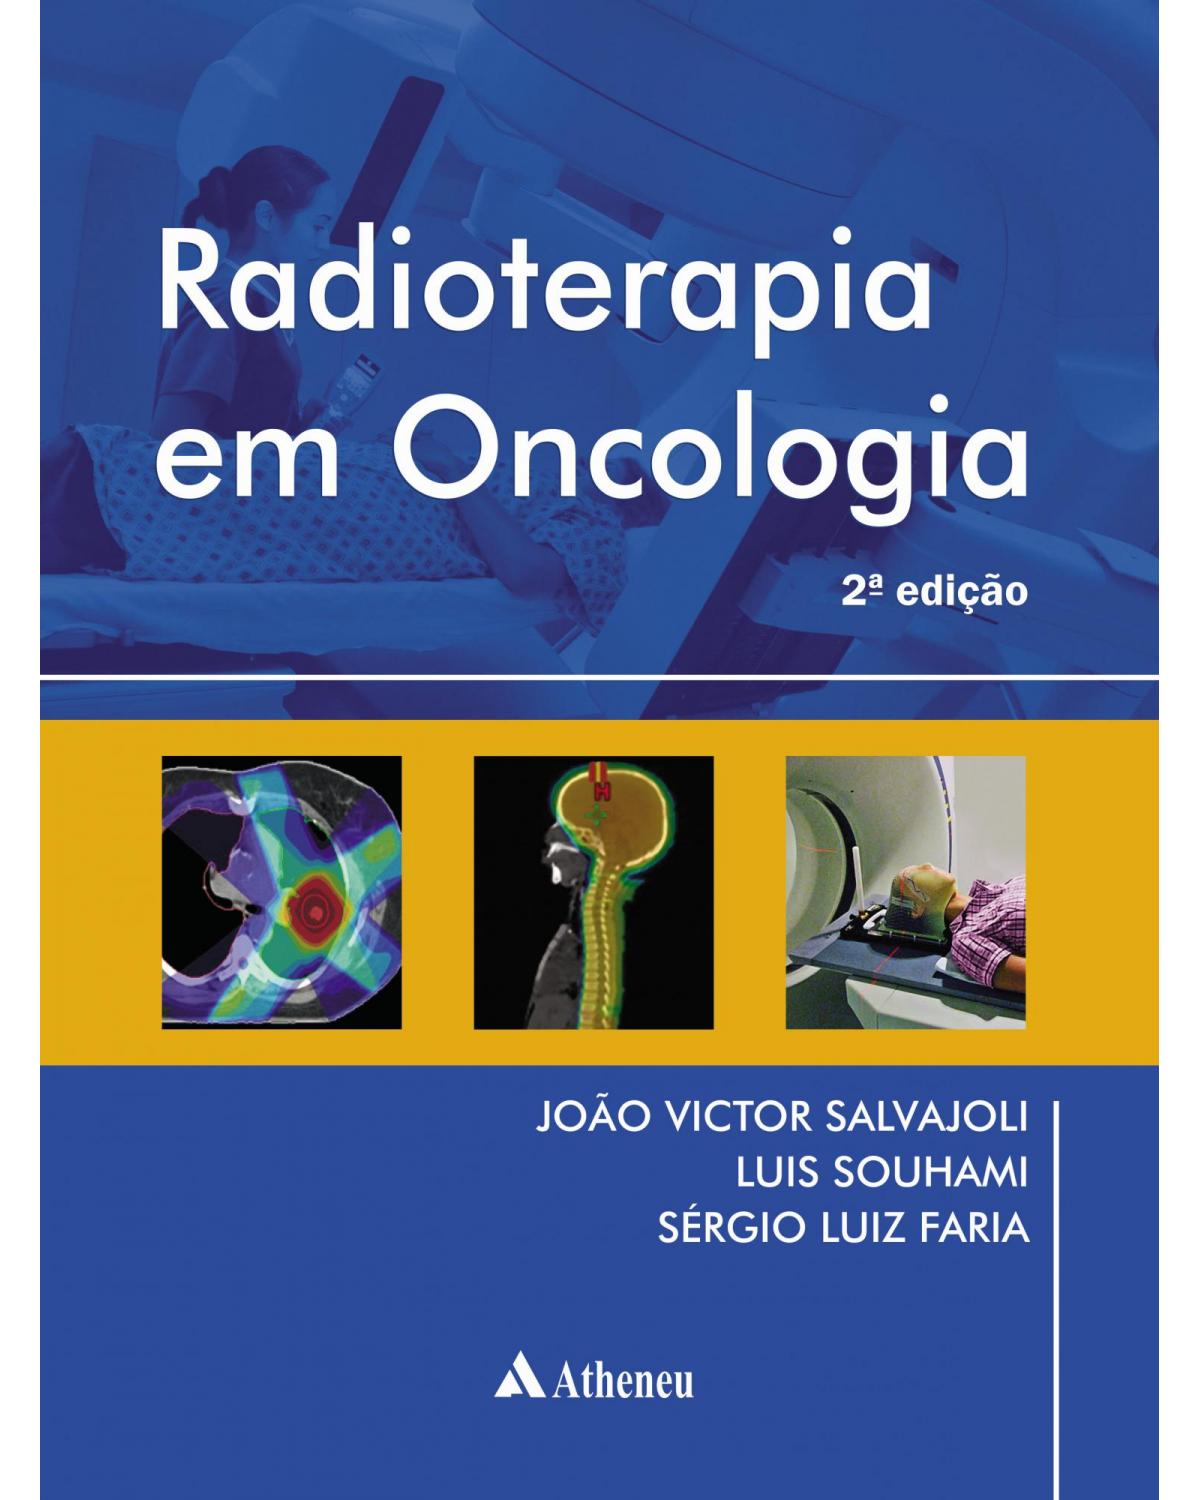 Radioterapia em oncologia - 2ª Edição | 2013